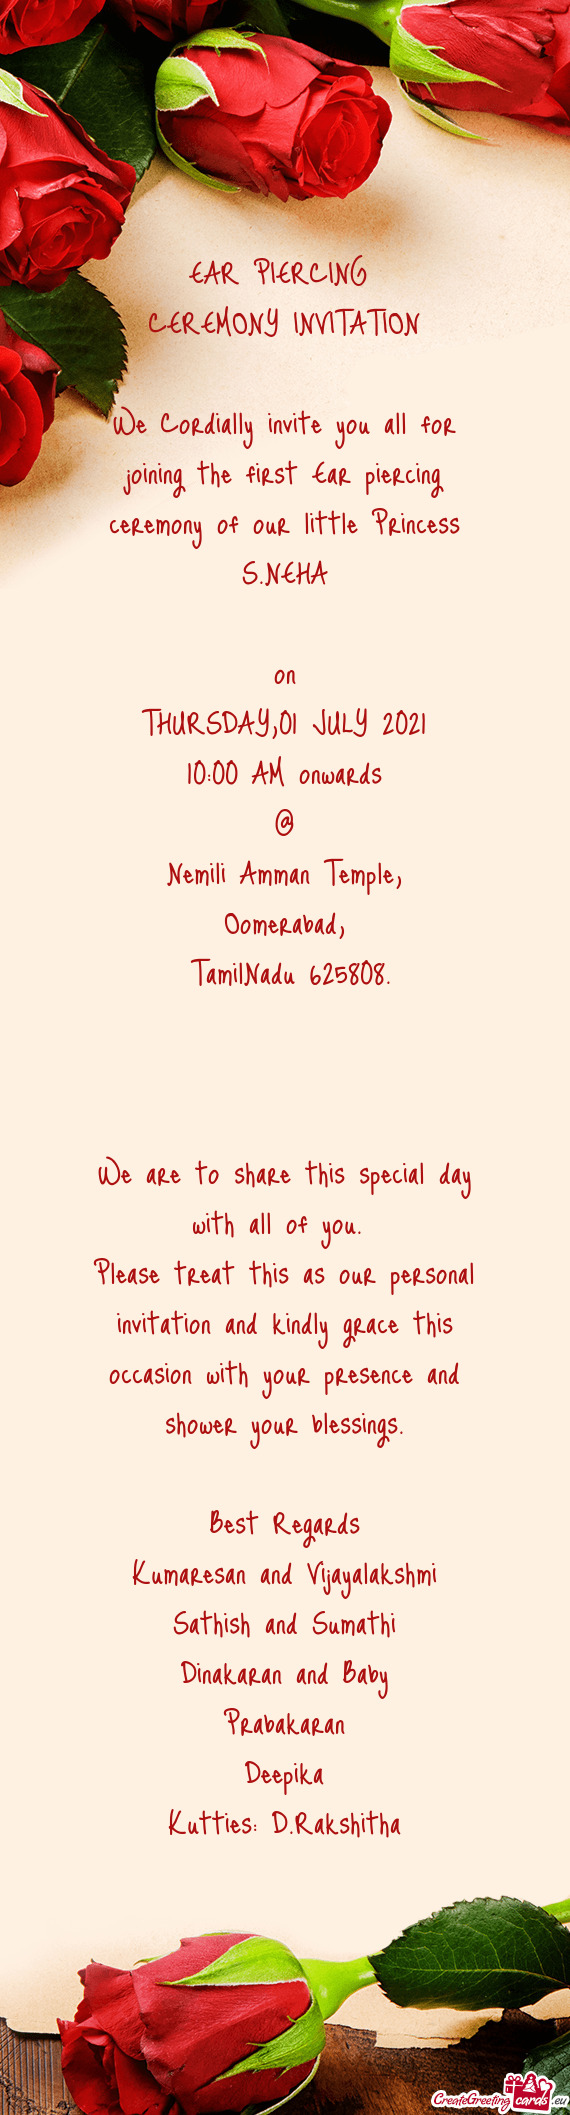 TamilNadu 625808